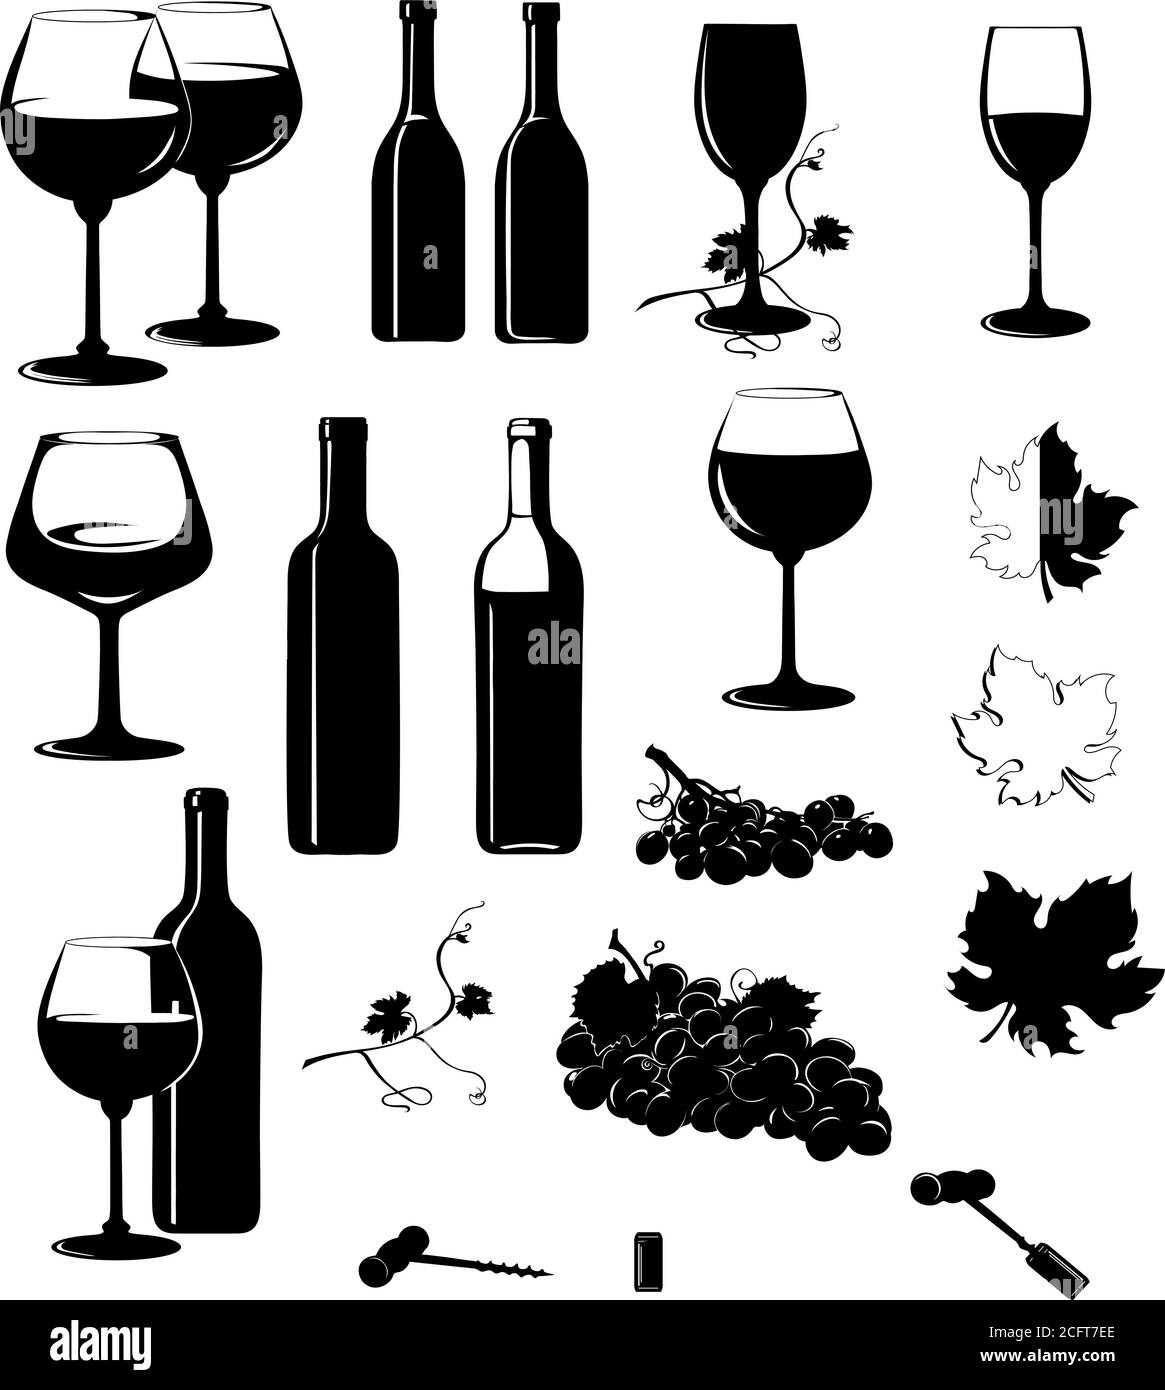 Vino, immagine vocale del vino, bottiglie di vino, grappolo di uve, vettore, immagine, isolato, calice, verricello, bottiglia, sughero, tappo, inceppamento, vite, uva Illustrazione Vettoriale